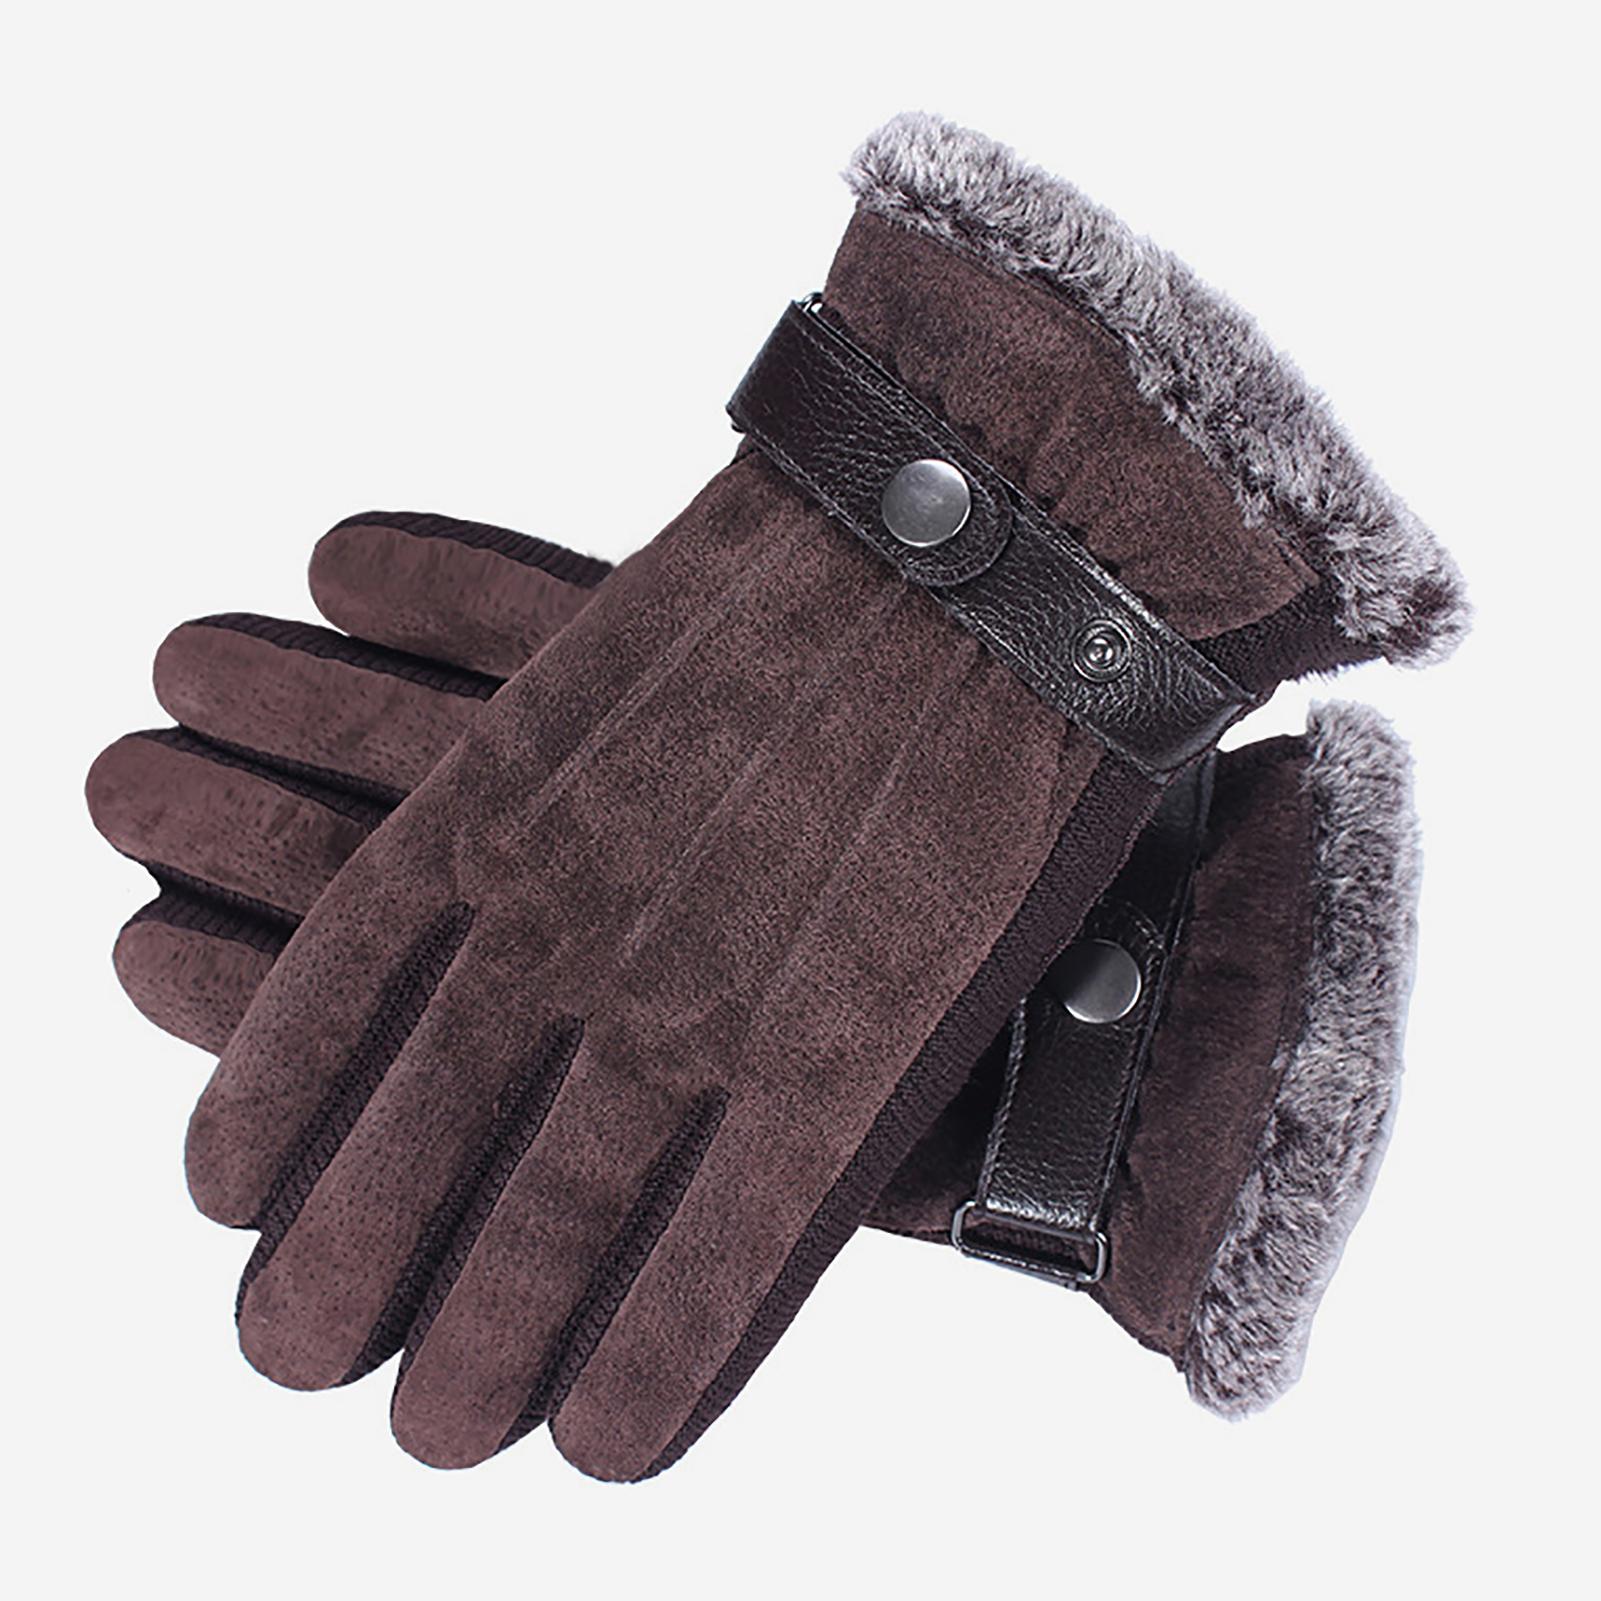 Găng tay bằng lông cừu, có thể chạm màn hình cảm ứng dùng trong mùa đông, hoạt động thể thao như đạp xe, trượt tuyết